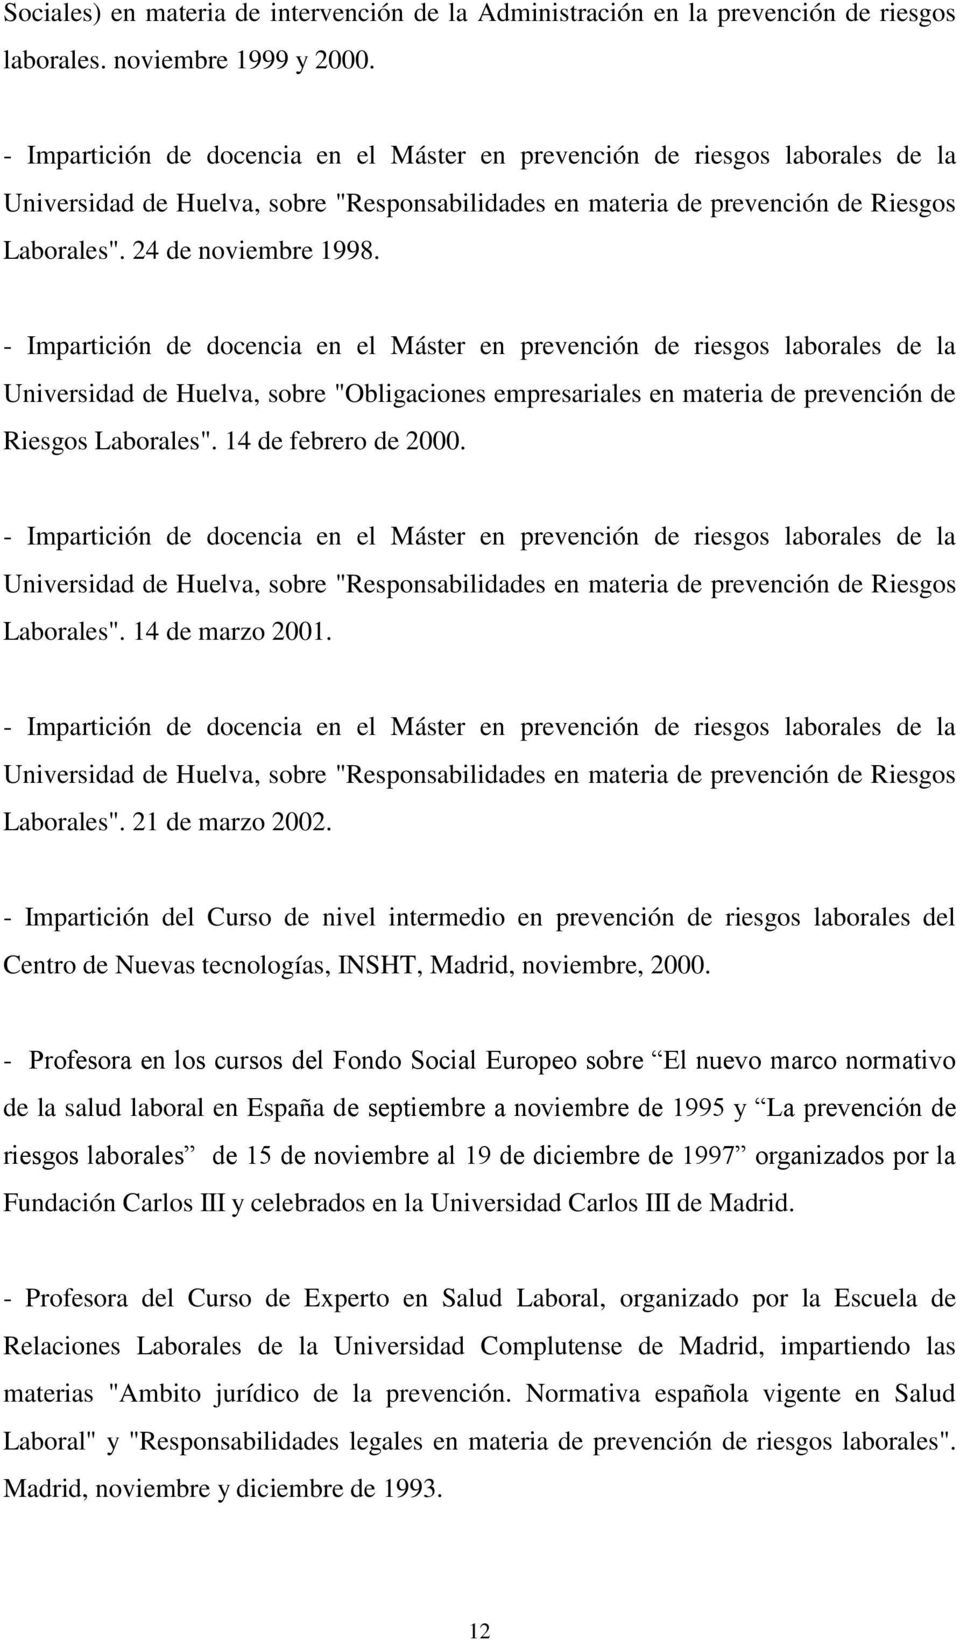 - Impartición de docencia en el Máster en prevención de riesgos laborales de la Universidad de Huelva, sobre "Obligaciones empresariales en materia de prevención de Riesgos Laborales".